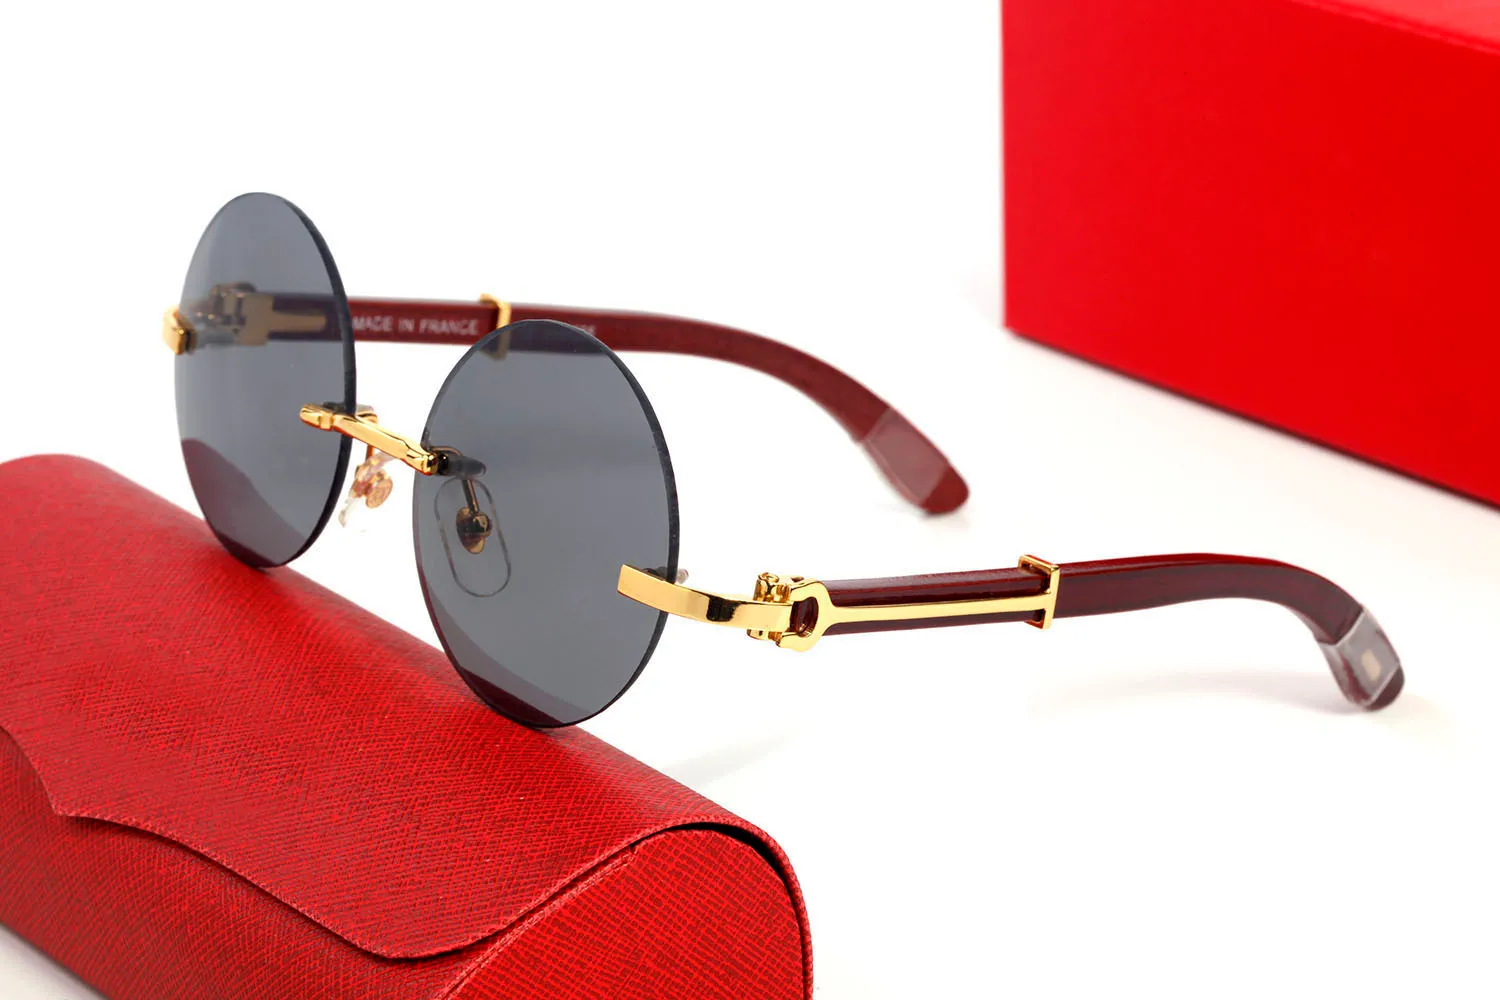 Runde Büffelhorn Sonnenbrille für Männer Frauen gerahmte Sonnenbrille Vintage Designer Brillen in goldenen Silberrahmen braune Holzbeine Ey318t